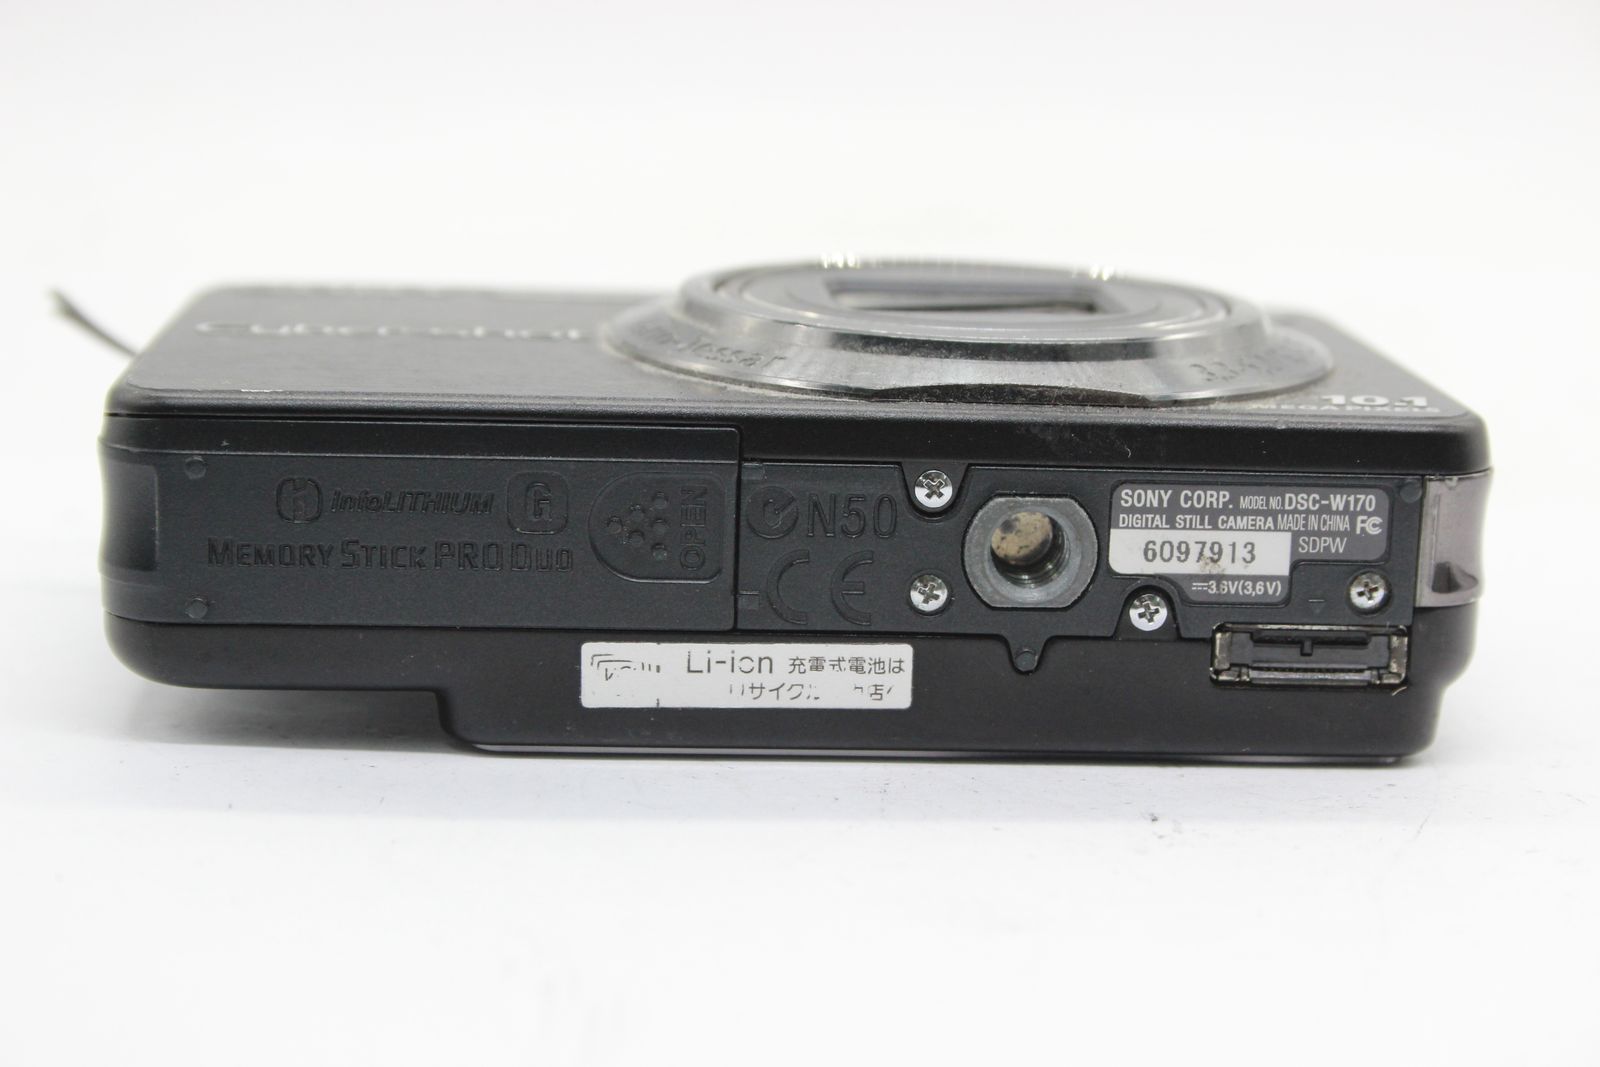 【返品保証】 ソニー SONY Cyber-shot DSC-W170 ブラック 5x バッテリー付き コンパクトデジタルカメラ s5086